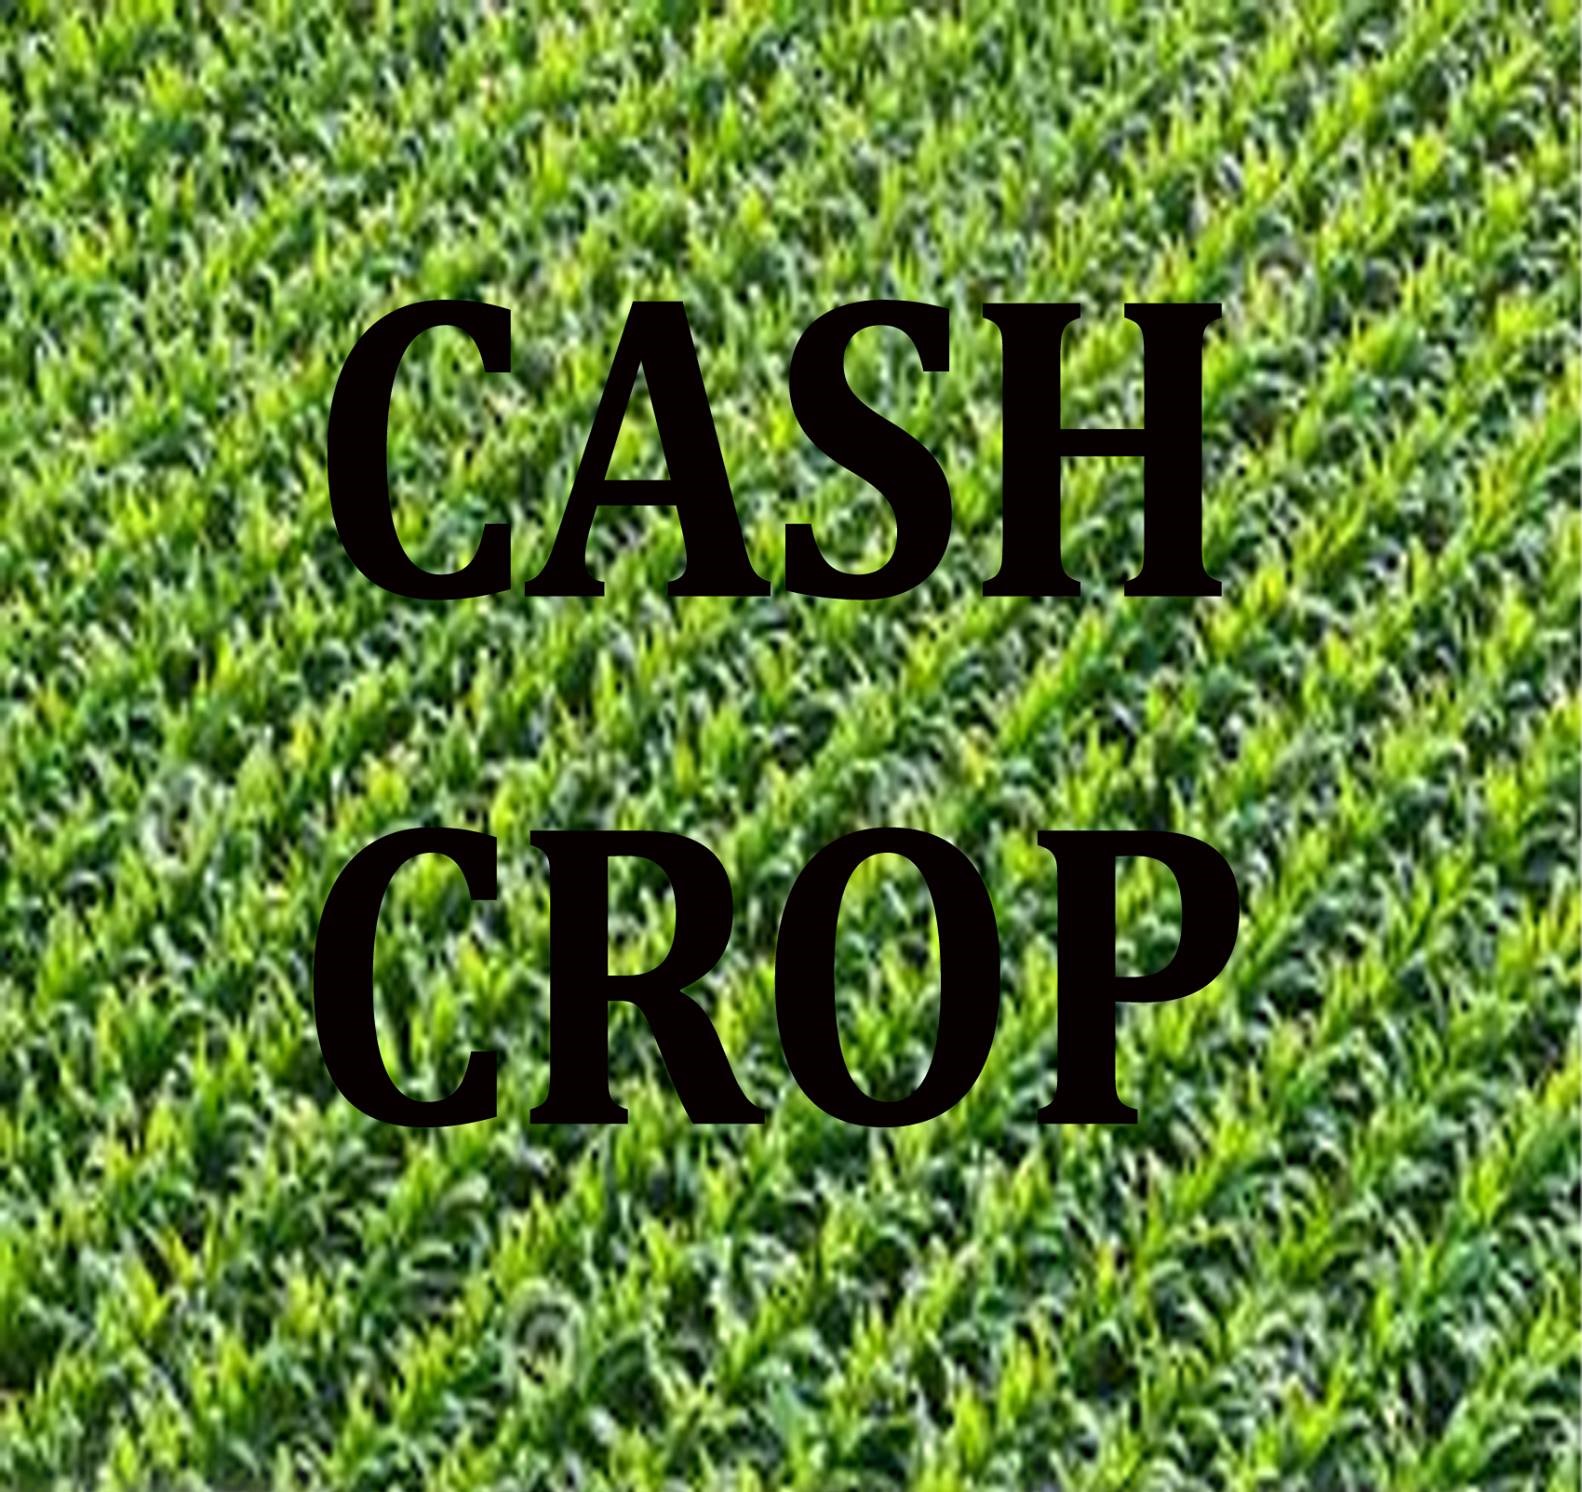 Cash Crop Band